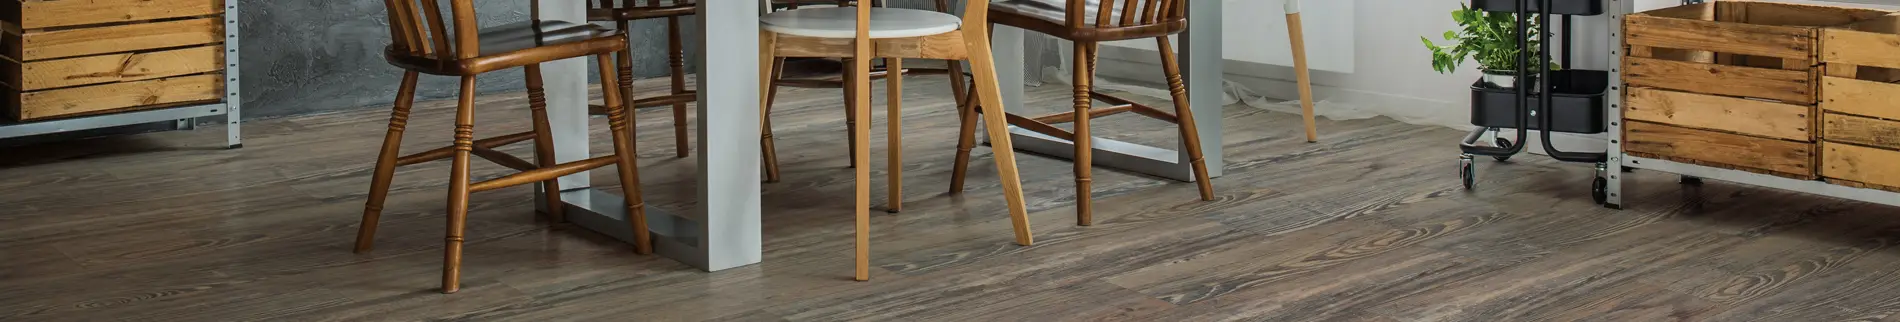 coretec flooring in dining room